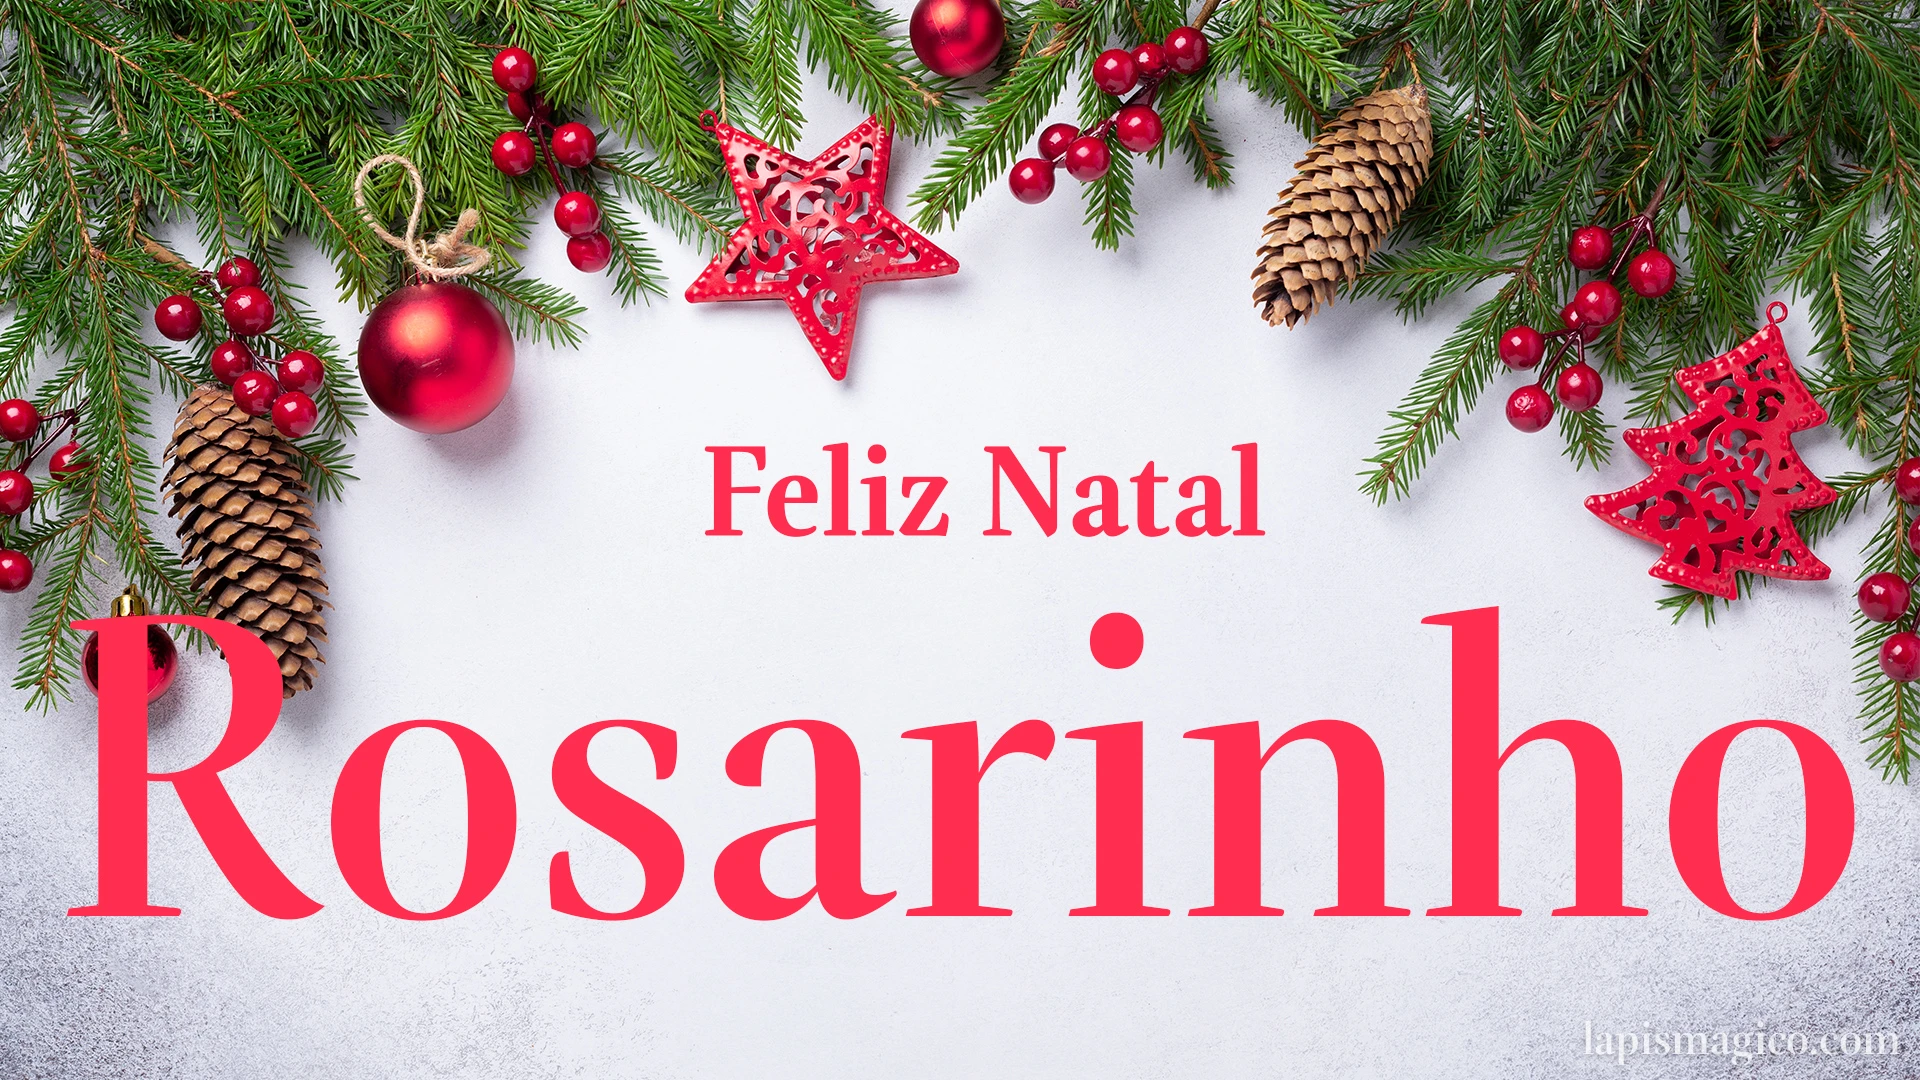 Oh Rosarinho, cinco postais de Feliz Natal Postal com o teu nome